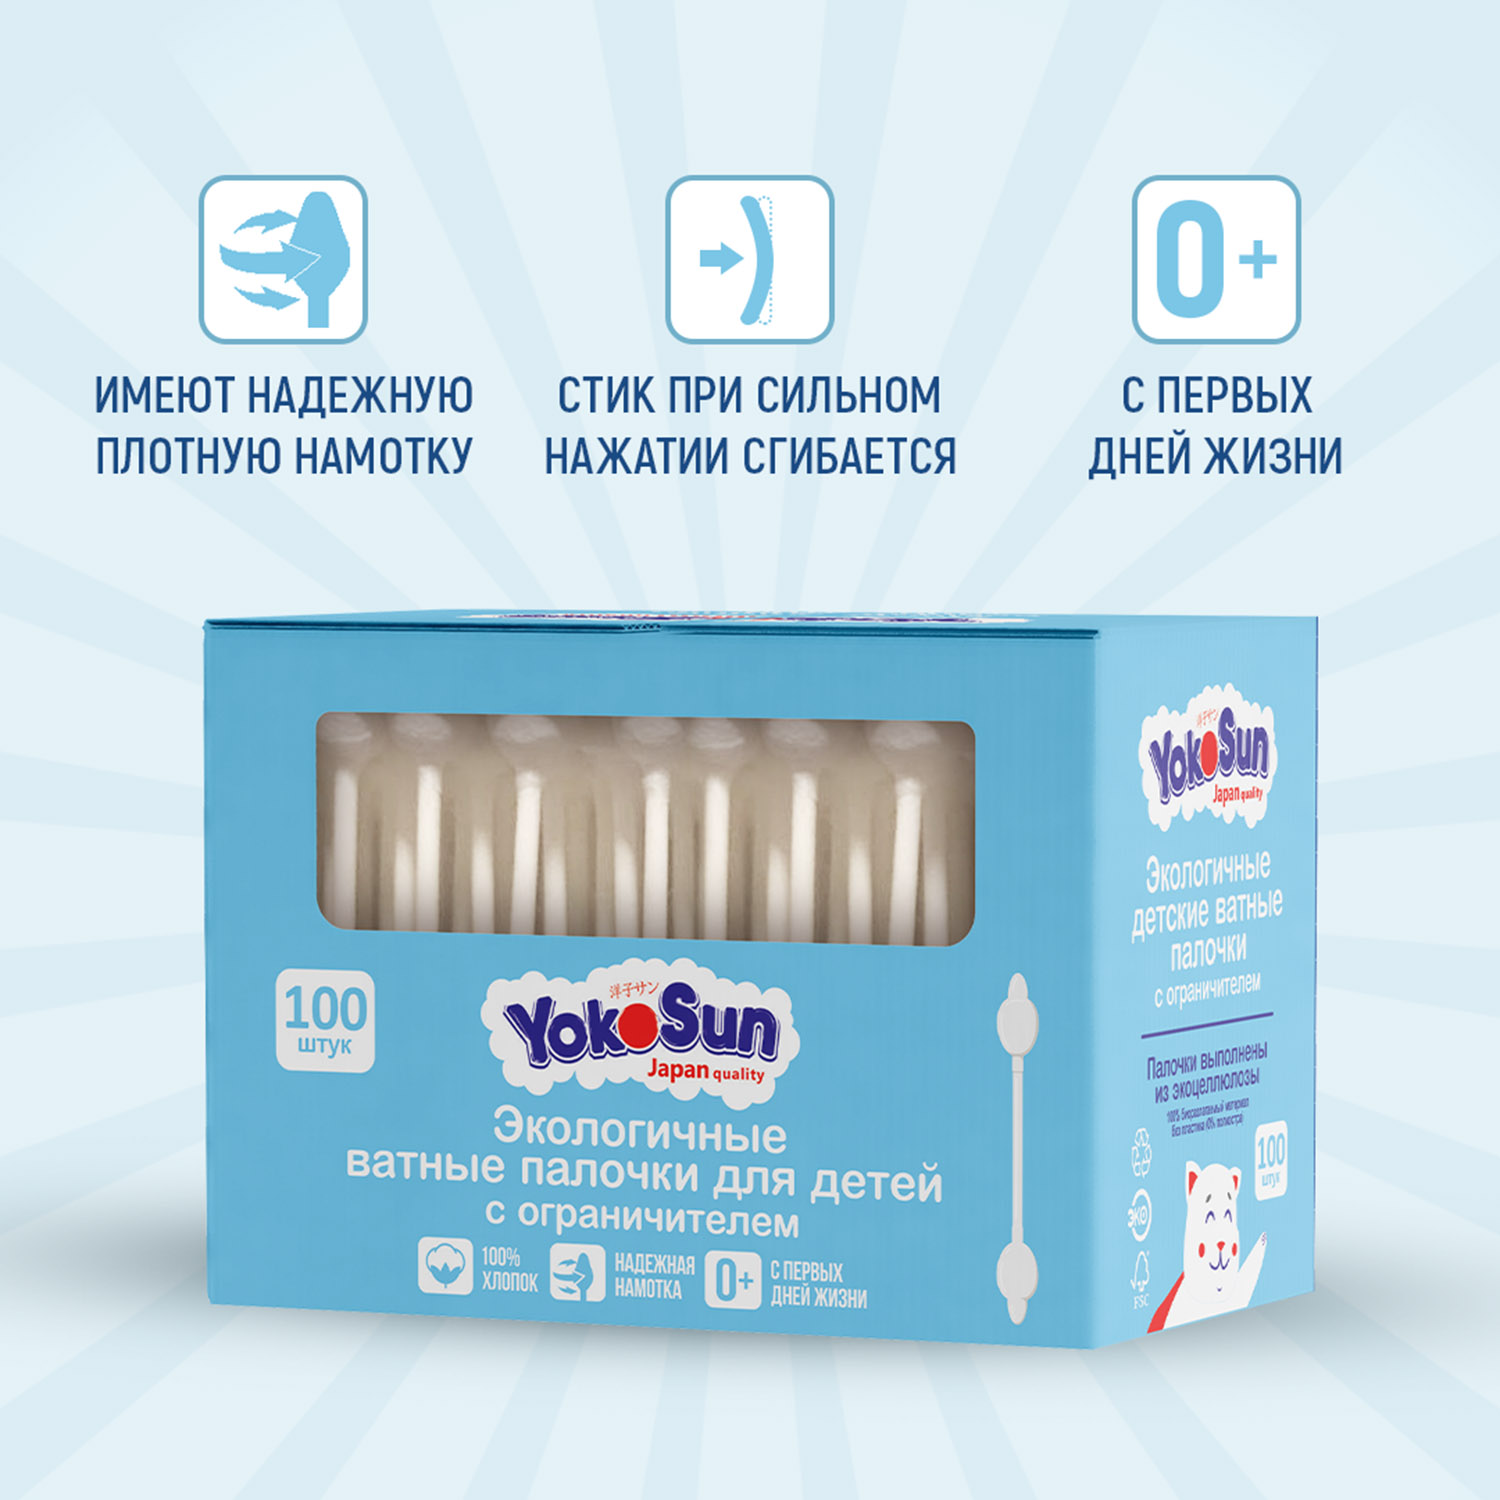 Палочки ватные YokoSun для детей экологичные с ограничителем 100шт - фото 3